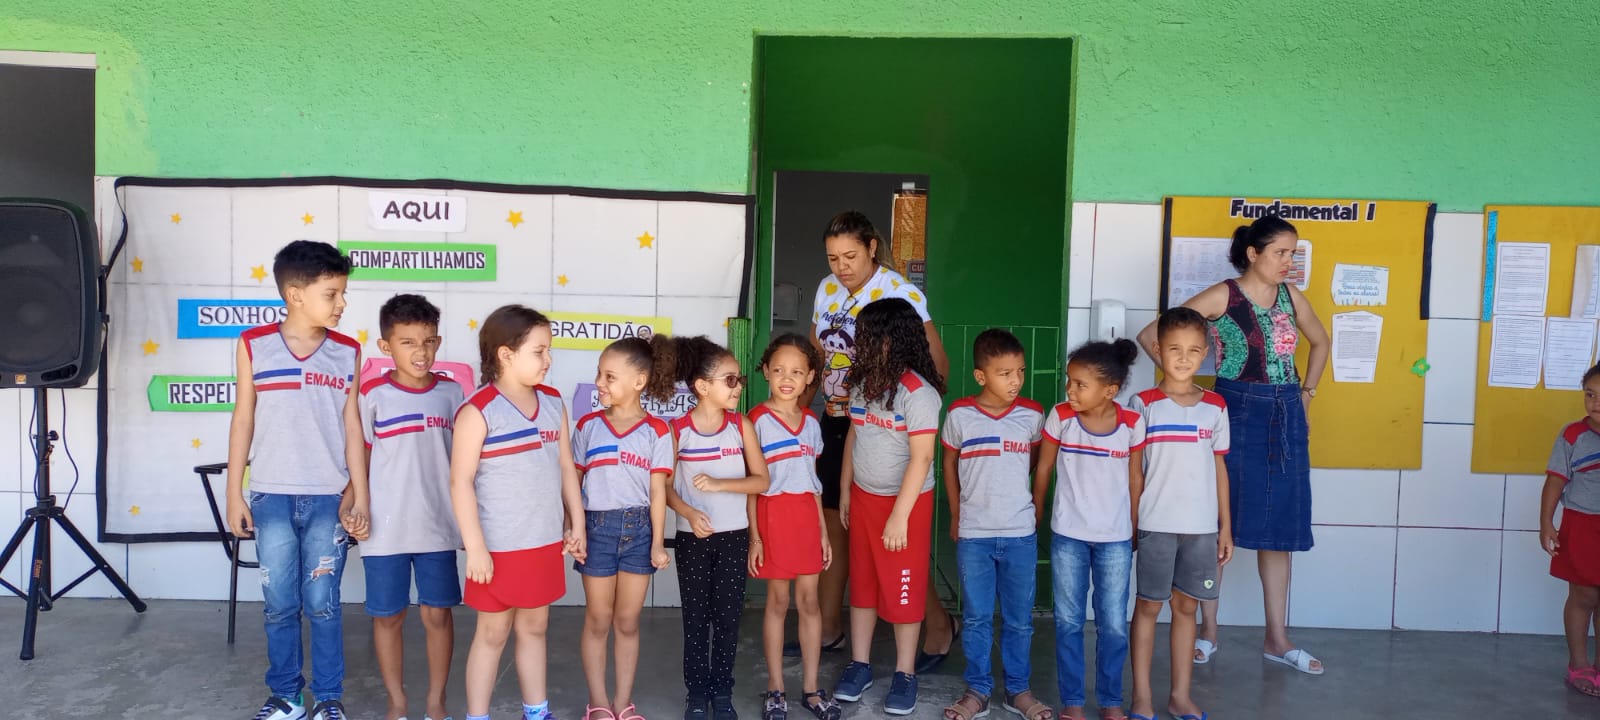 Prefeitura de Eunápolis reforça compromisso com a cultura da paz na rede municipal de ensino 6